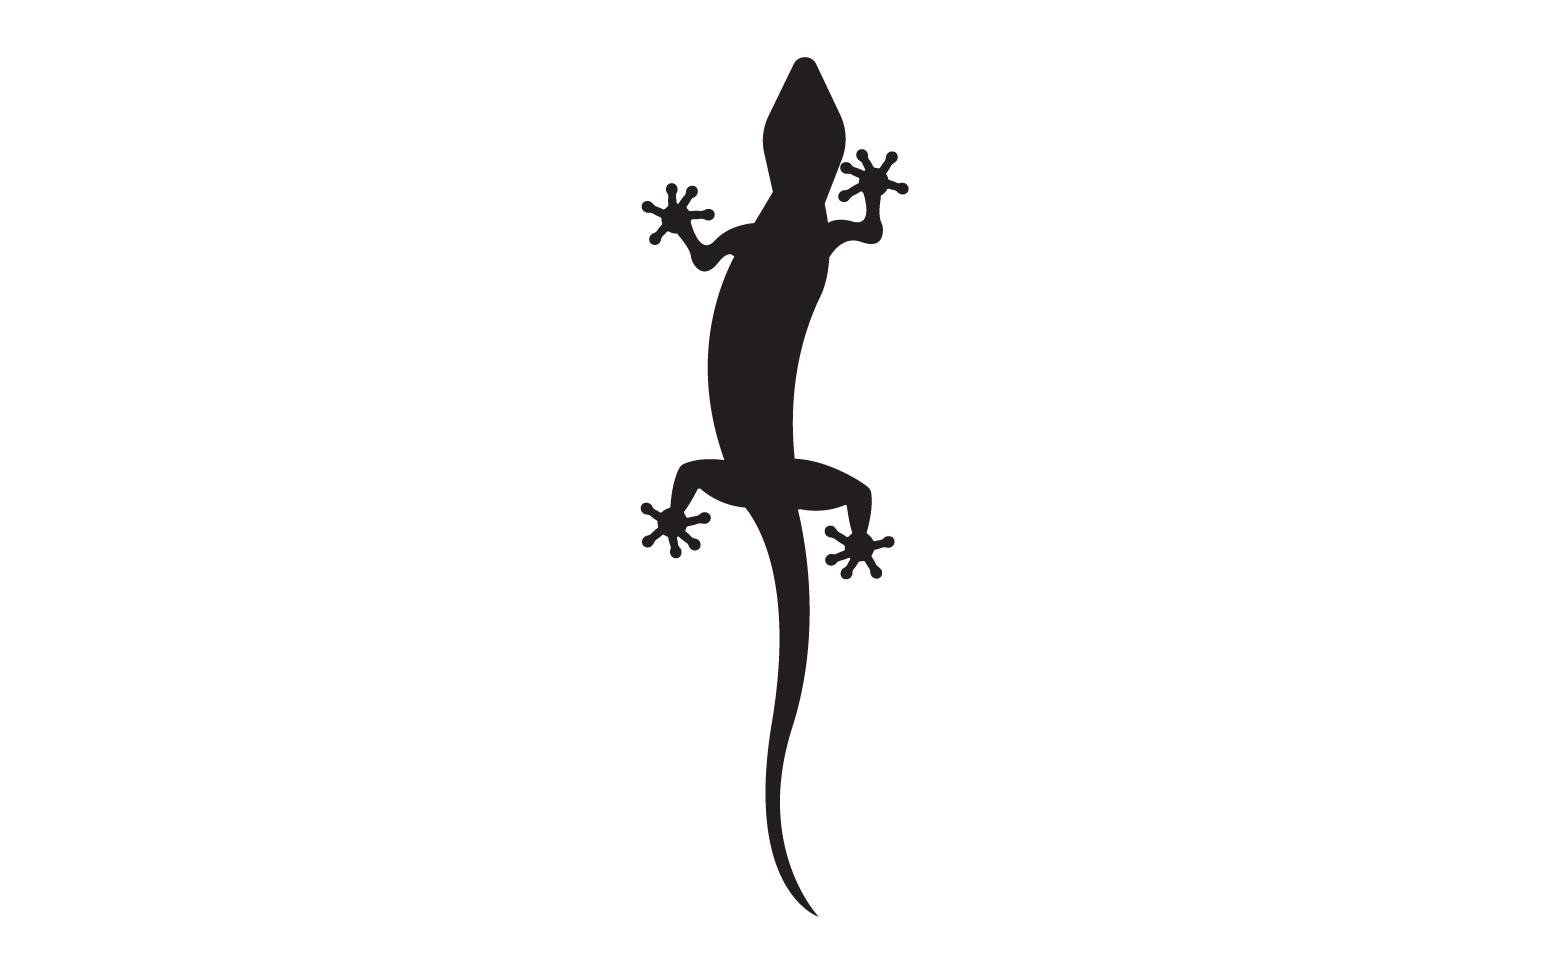 Lizard chameleon home lizard logo v38